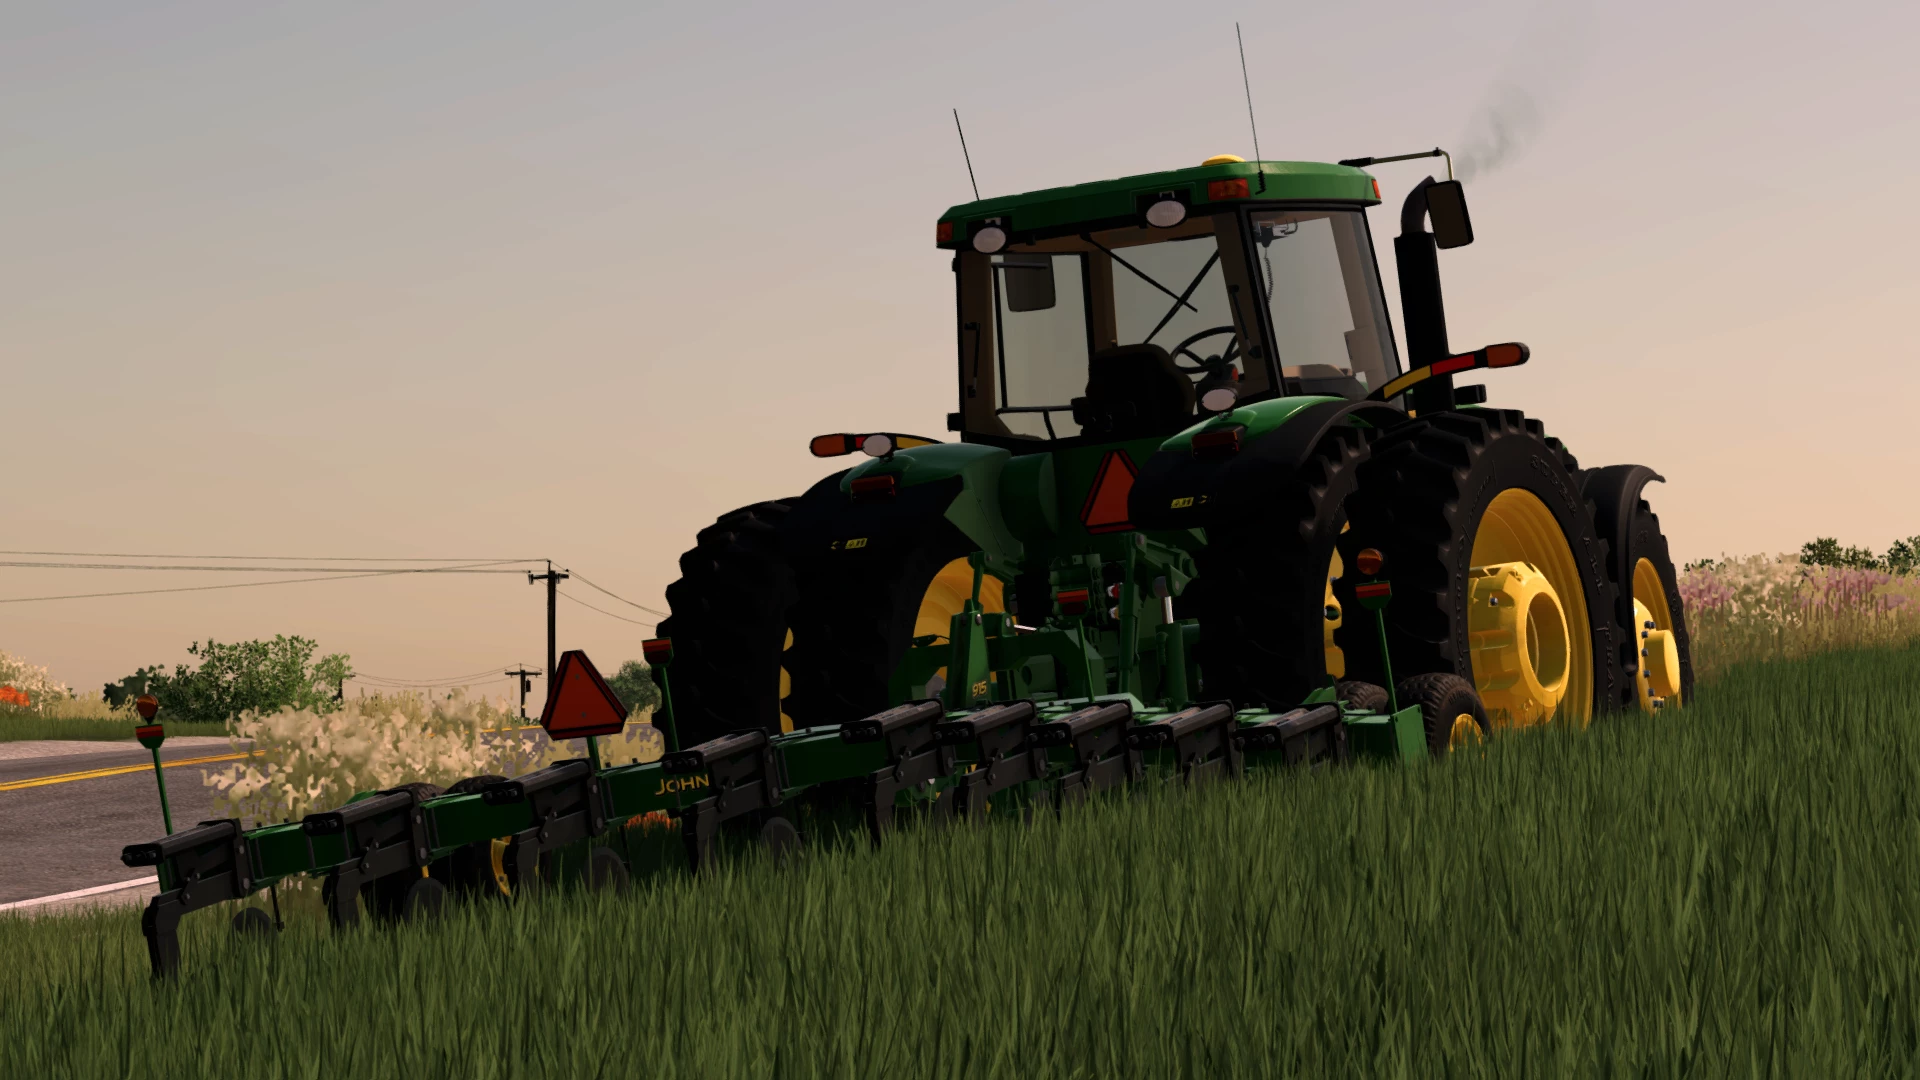 John Deere Ripper V Fs Mods Farming Simulator Mods Hot Sex Picture 4183